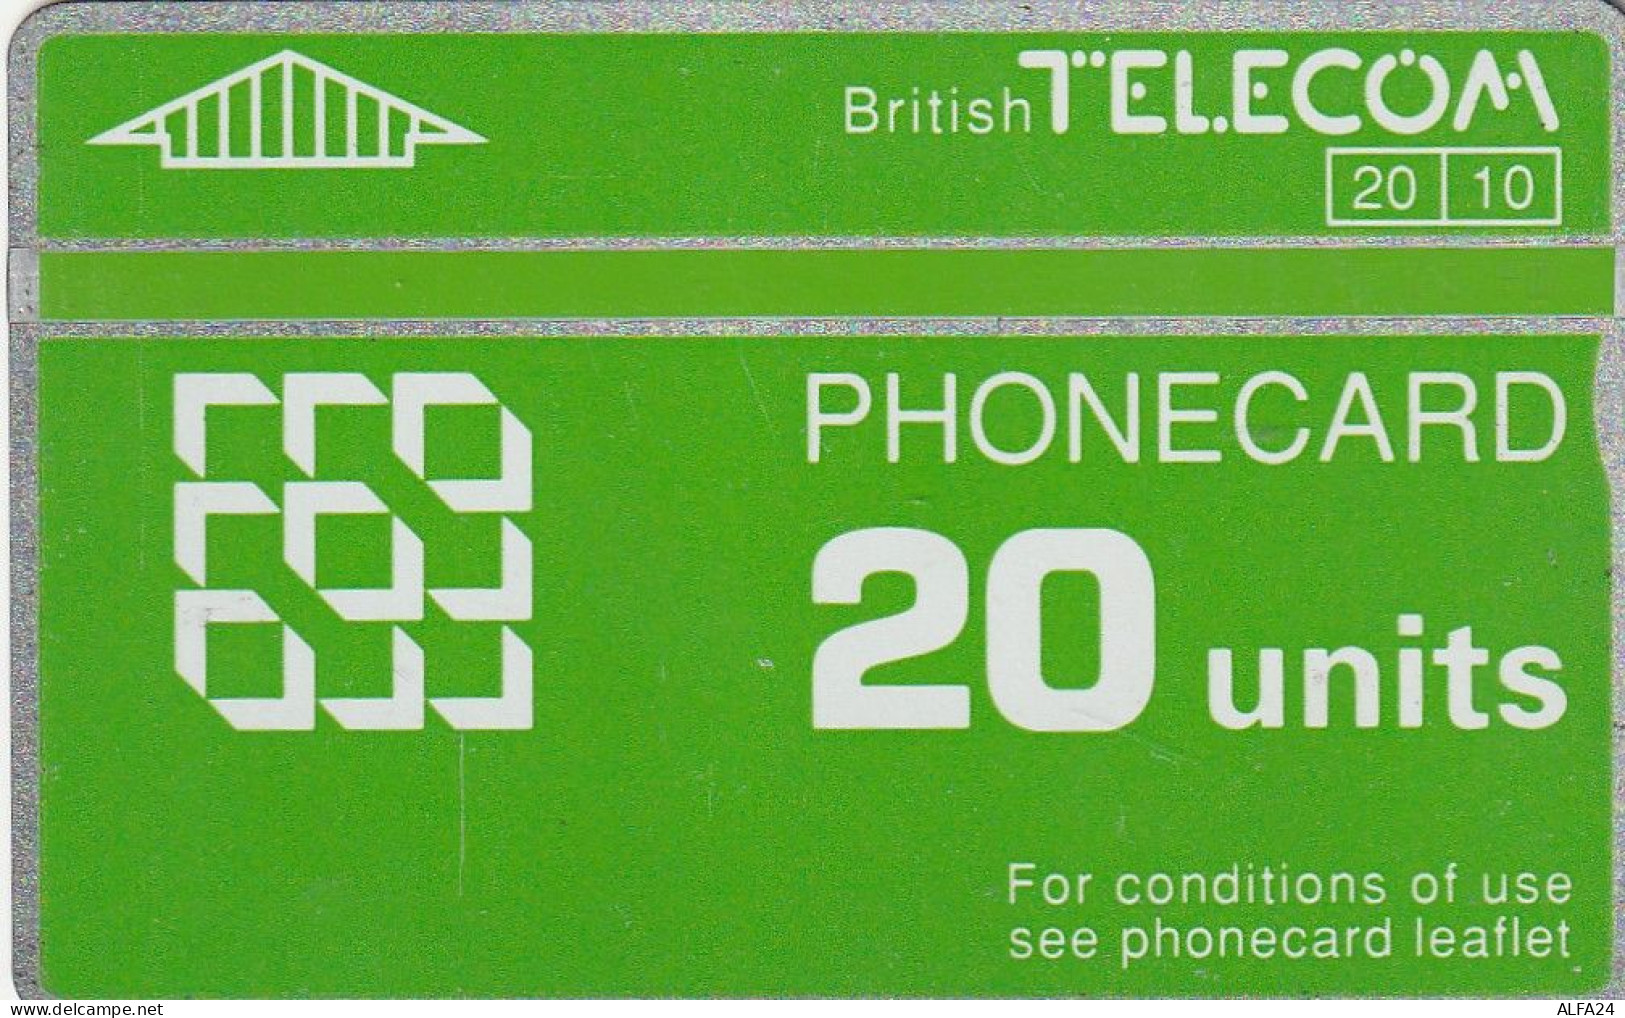 PHONE CARD UK LG (CZ1750 - BT Emissions Générales